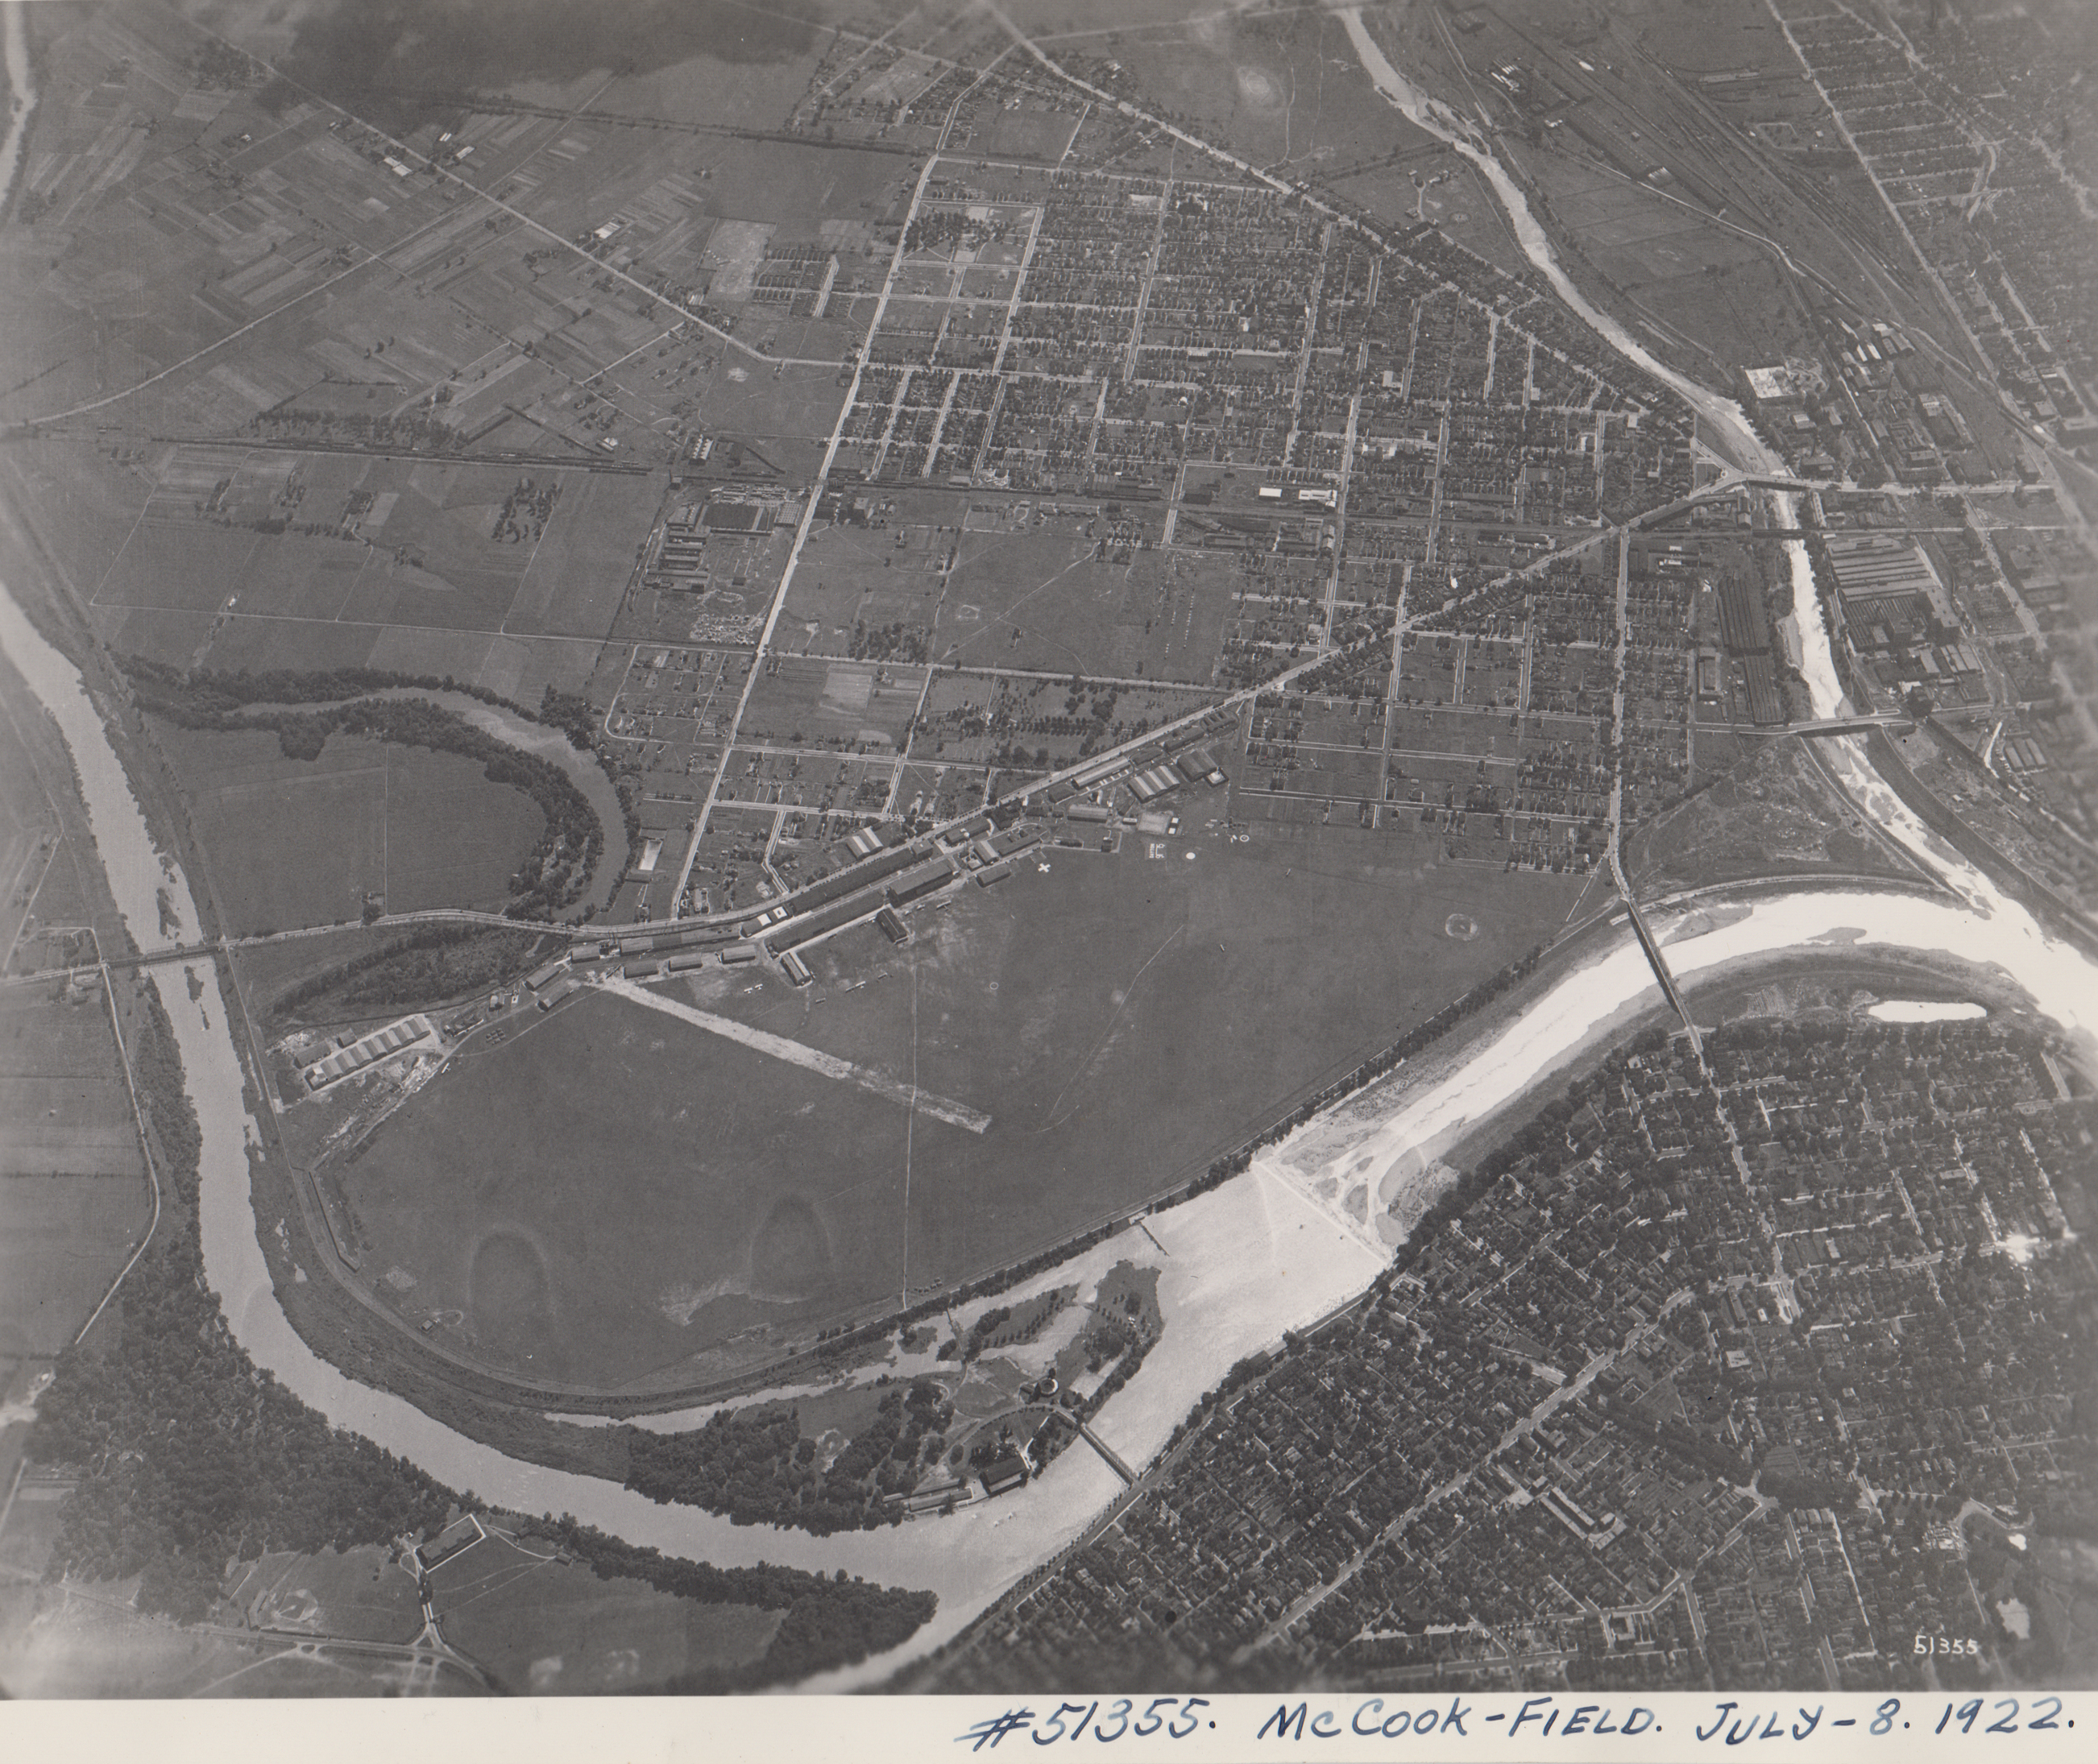 McCook Field, aerial view, 1922